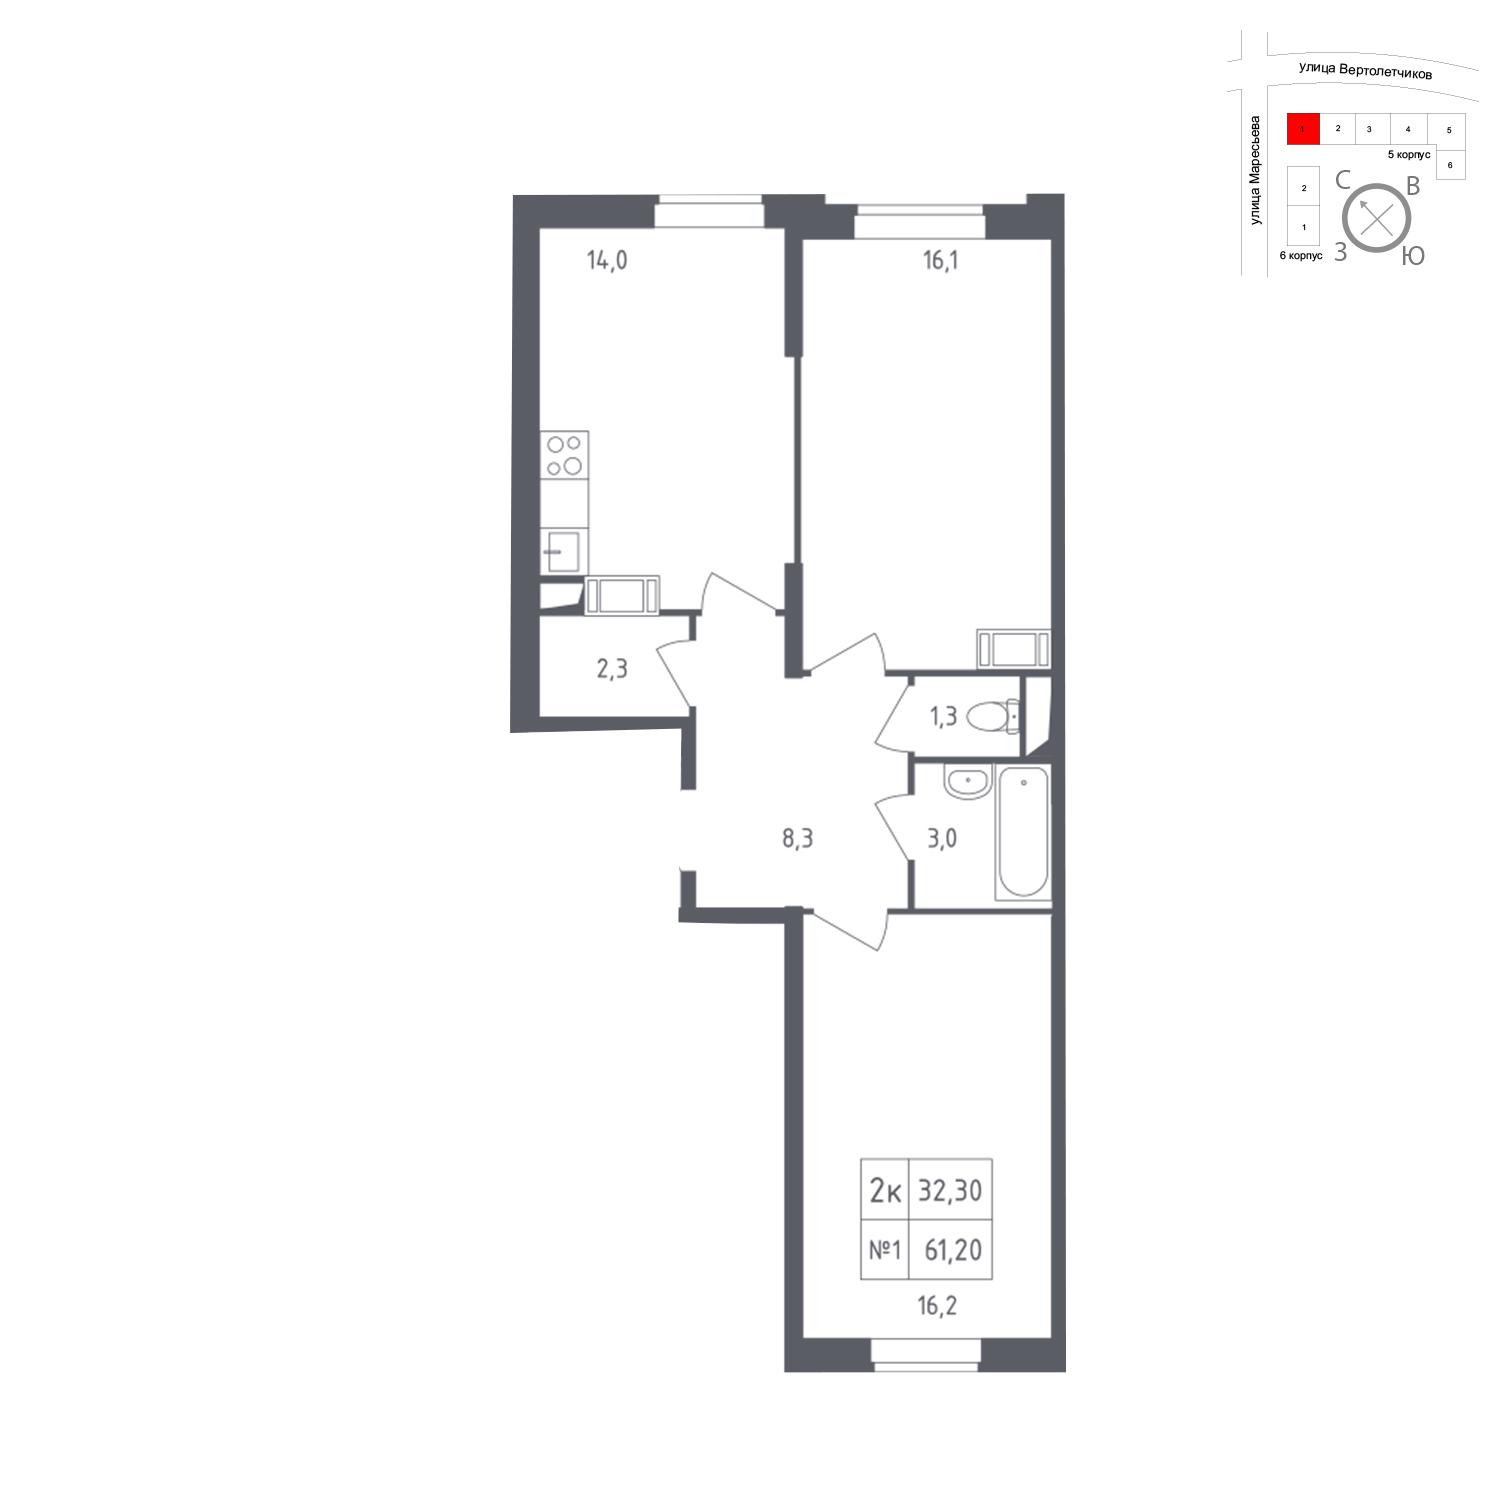 Продаётся 2-комнатная квартира в новостройке 61.2 кв.м. этаж 16/23 за 10 436 375 руб 